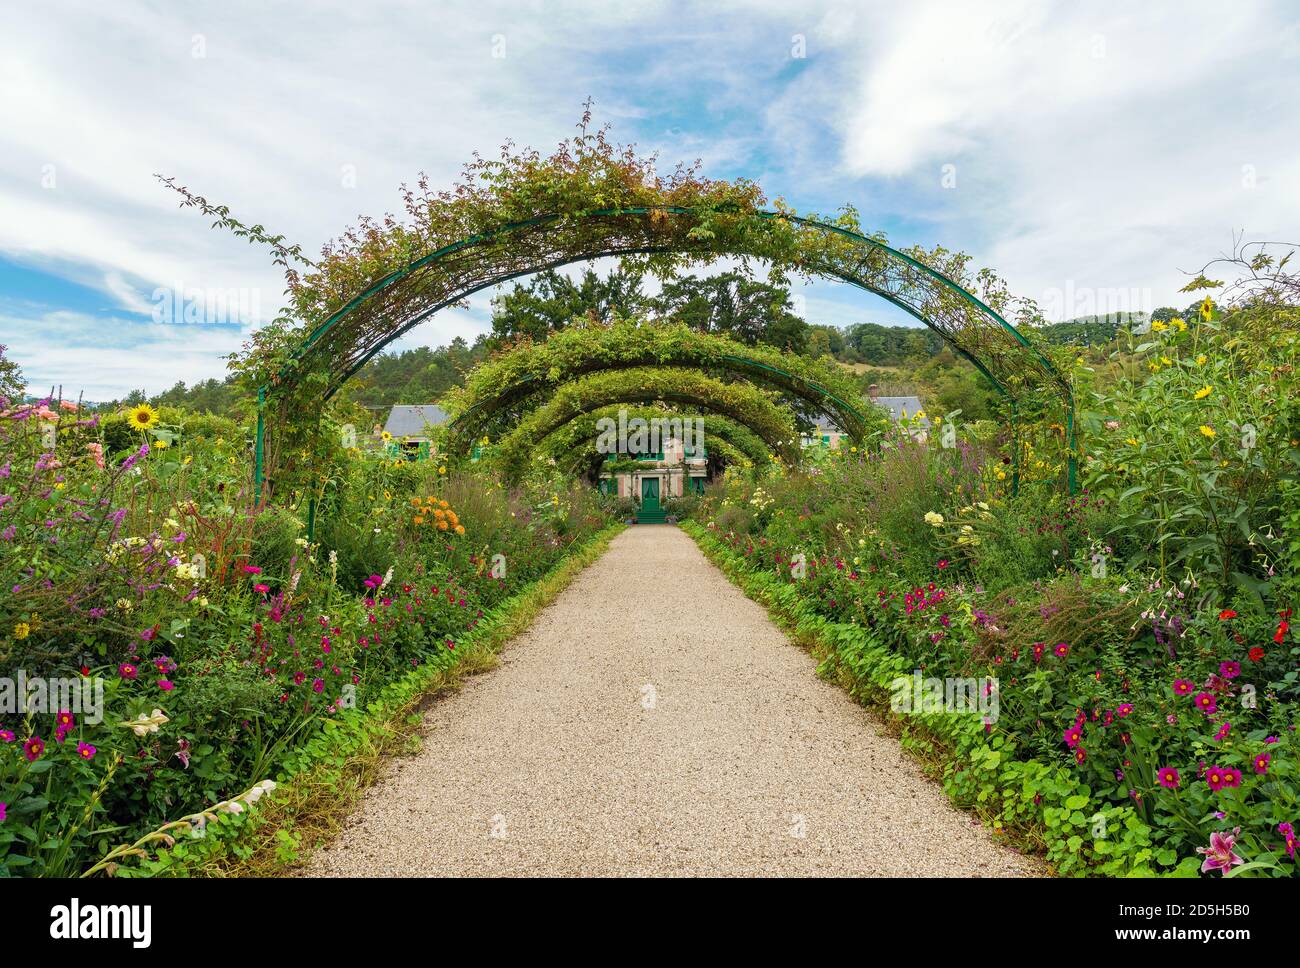 La maison de Monet et la voie des fleurs à Giverny - Giverny, France Banque D'Images